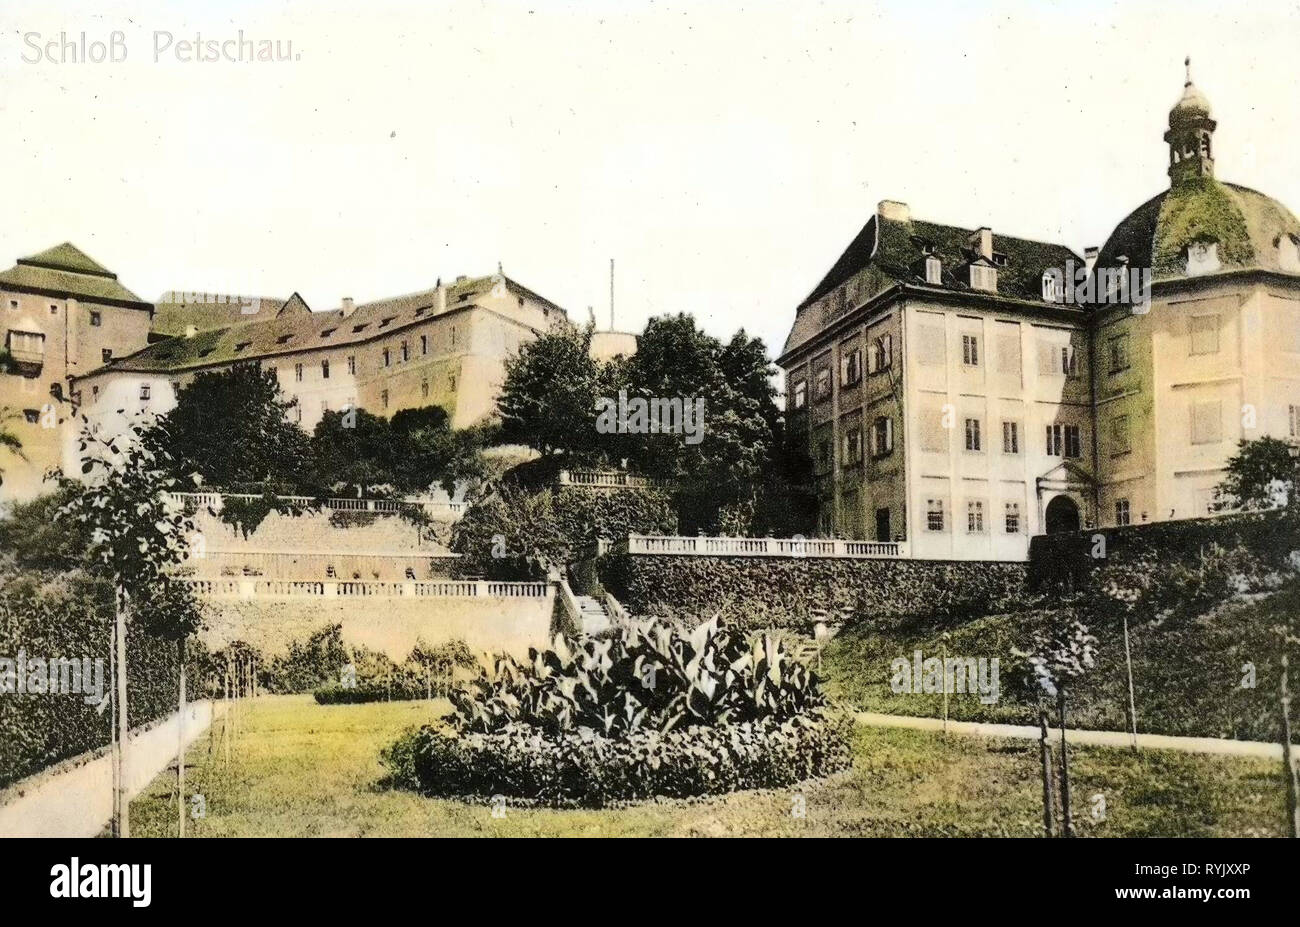 Bečov nad Teplou Castle, Bečov nad Teplou Chateau, 1899, Karlovy Vary Region, Petschau, Schloß, Czech Republic Stock Photo